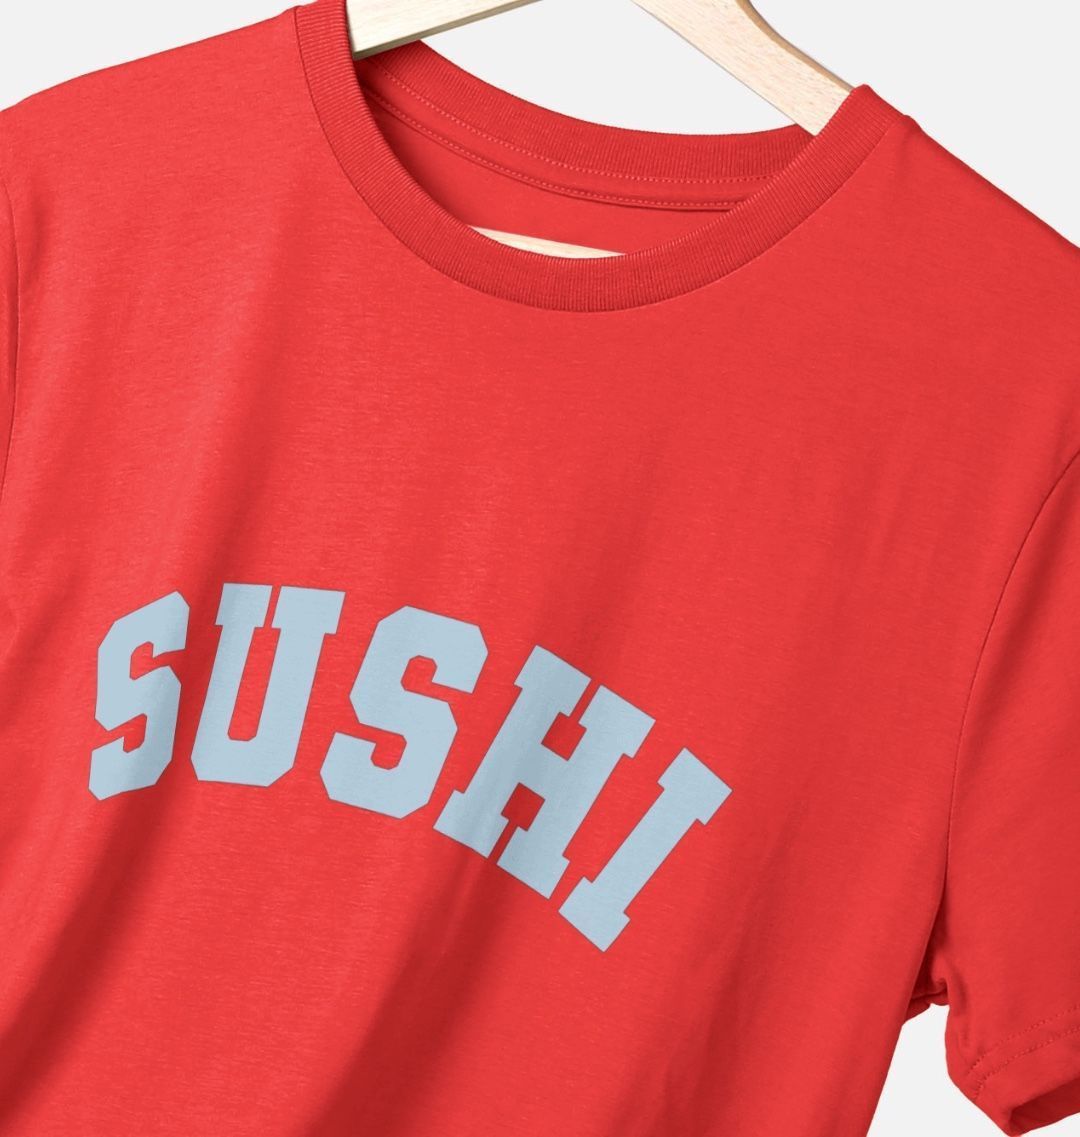 Sushi varsity t-shirt